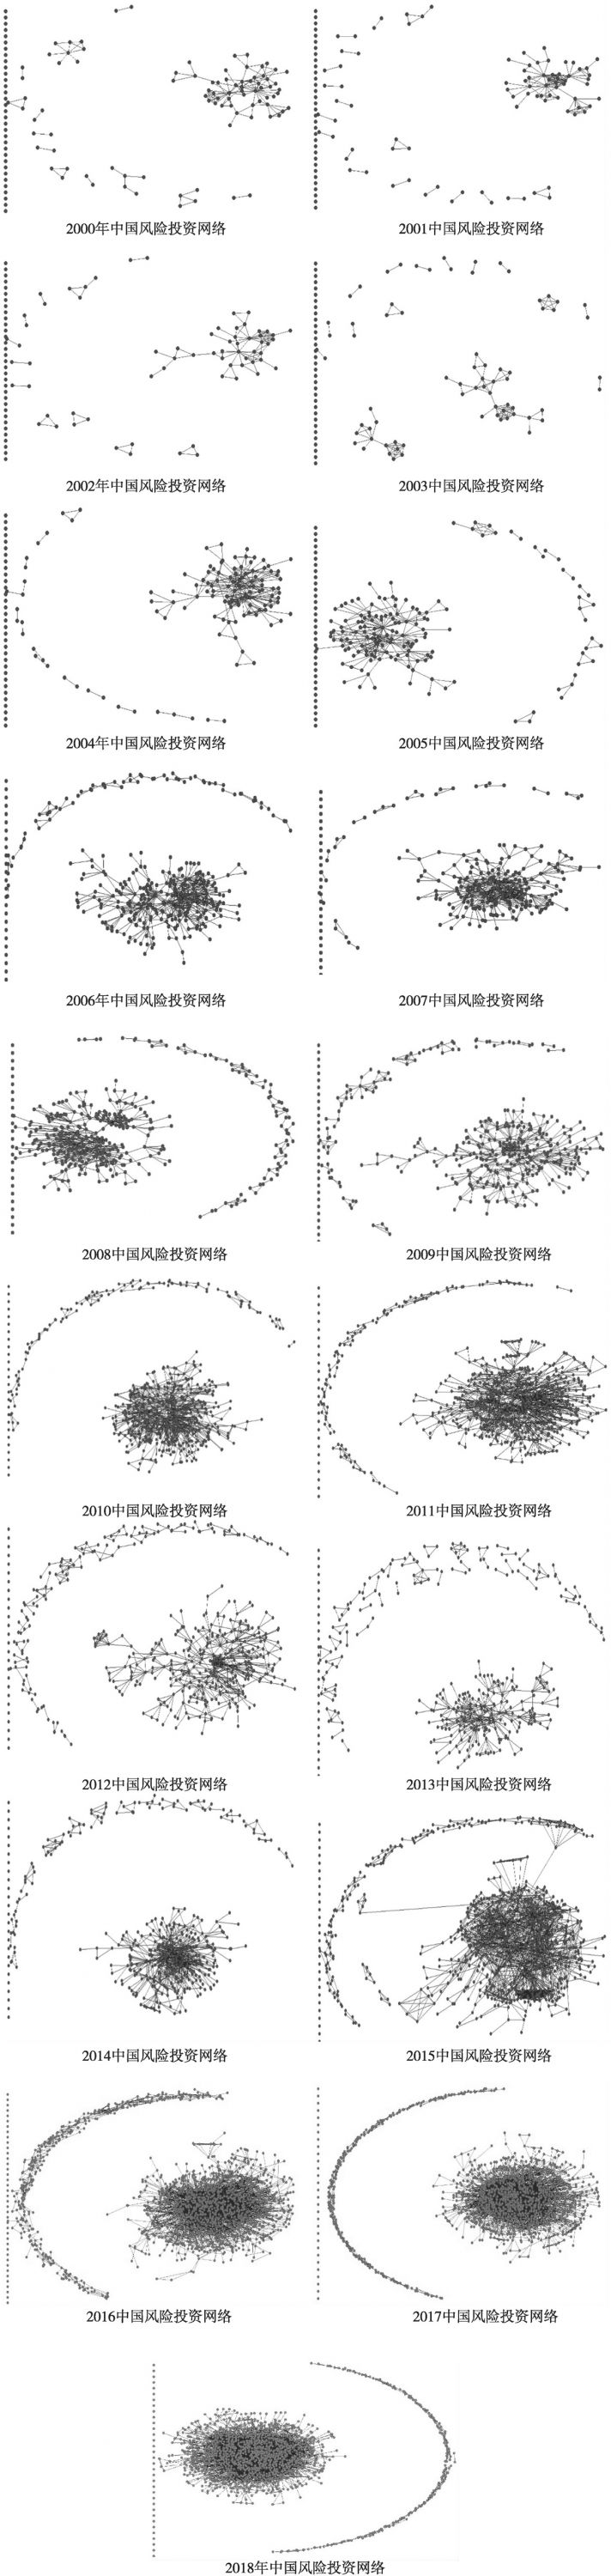 图3-6 2000～2018年中国风险投资网络的动态演变